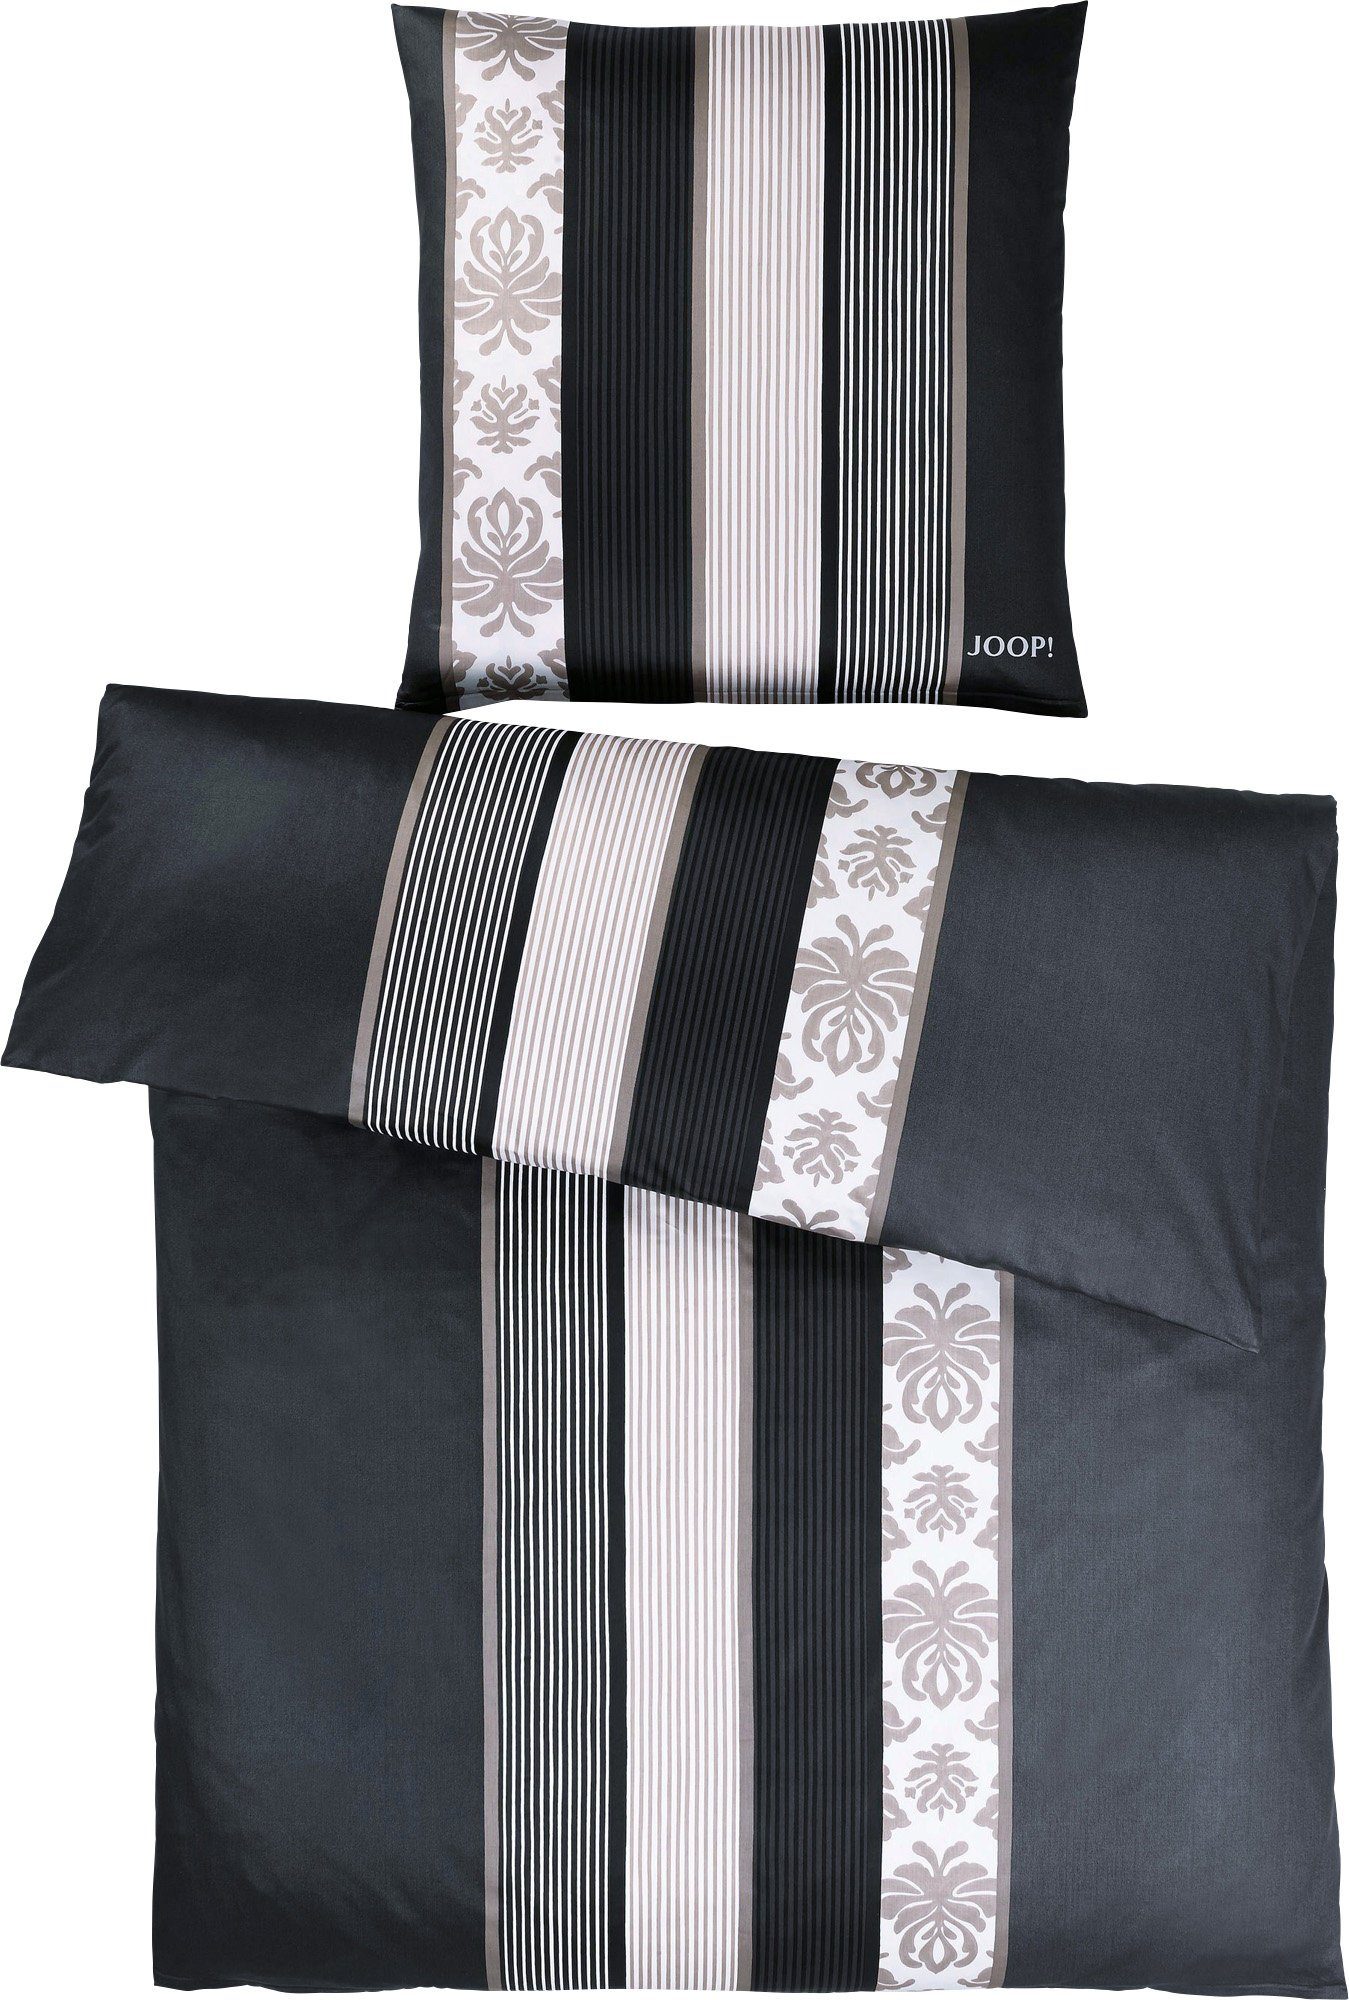 Bettwäsche Bettwäsche "Ornament Stripe", Joop!, Mako-Satin, 2 teilig, Streifen schwarz